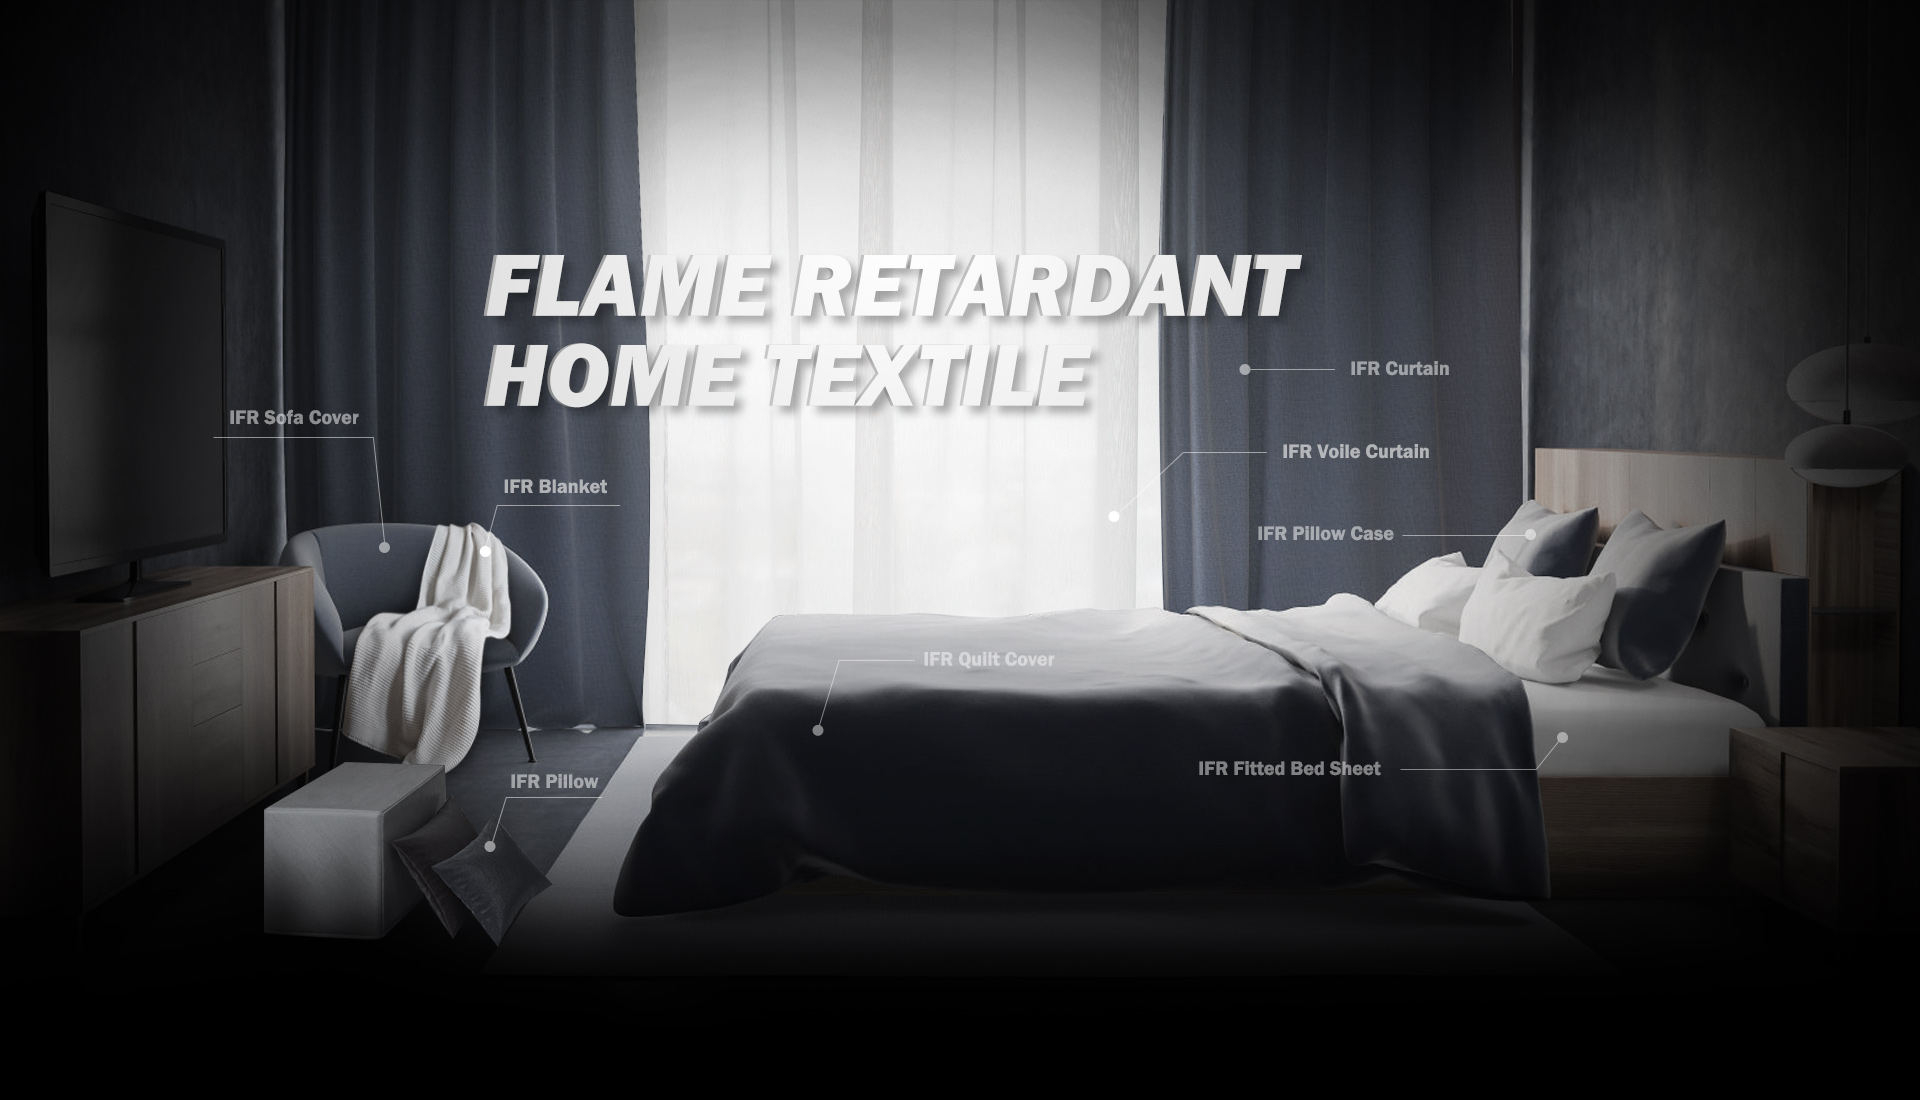 Flame retardant home textile